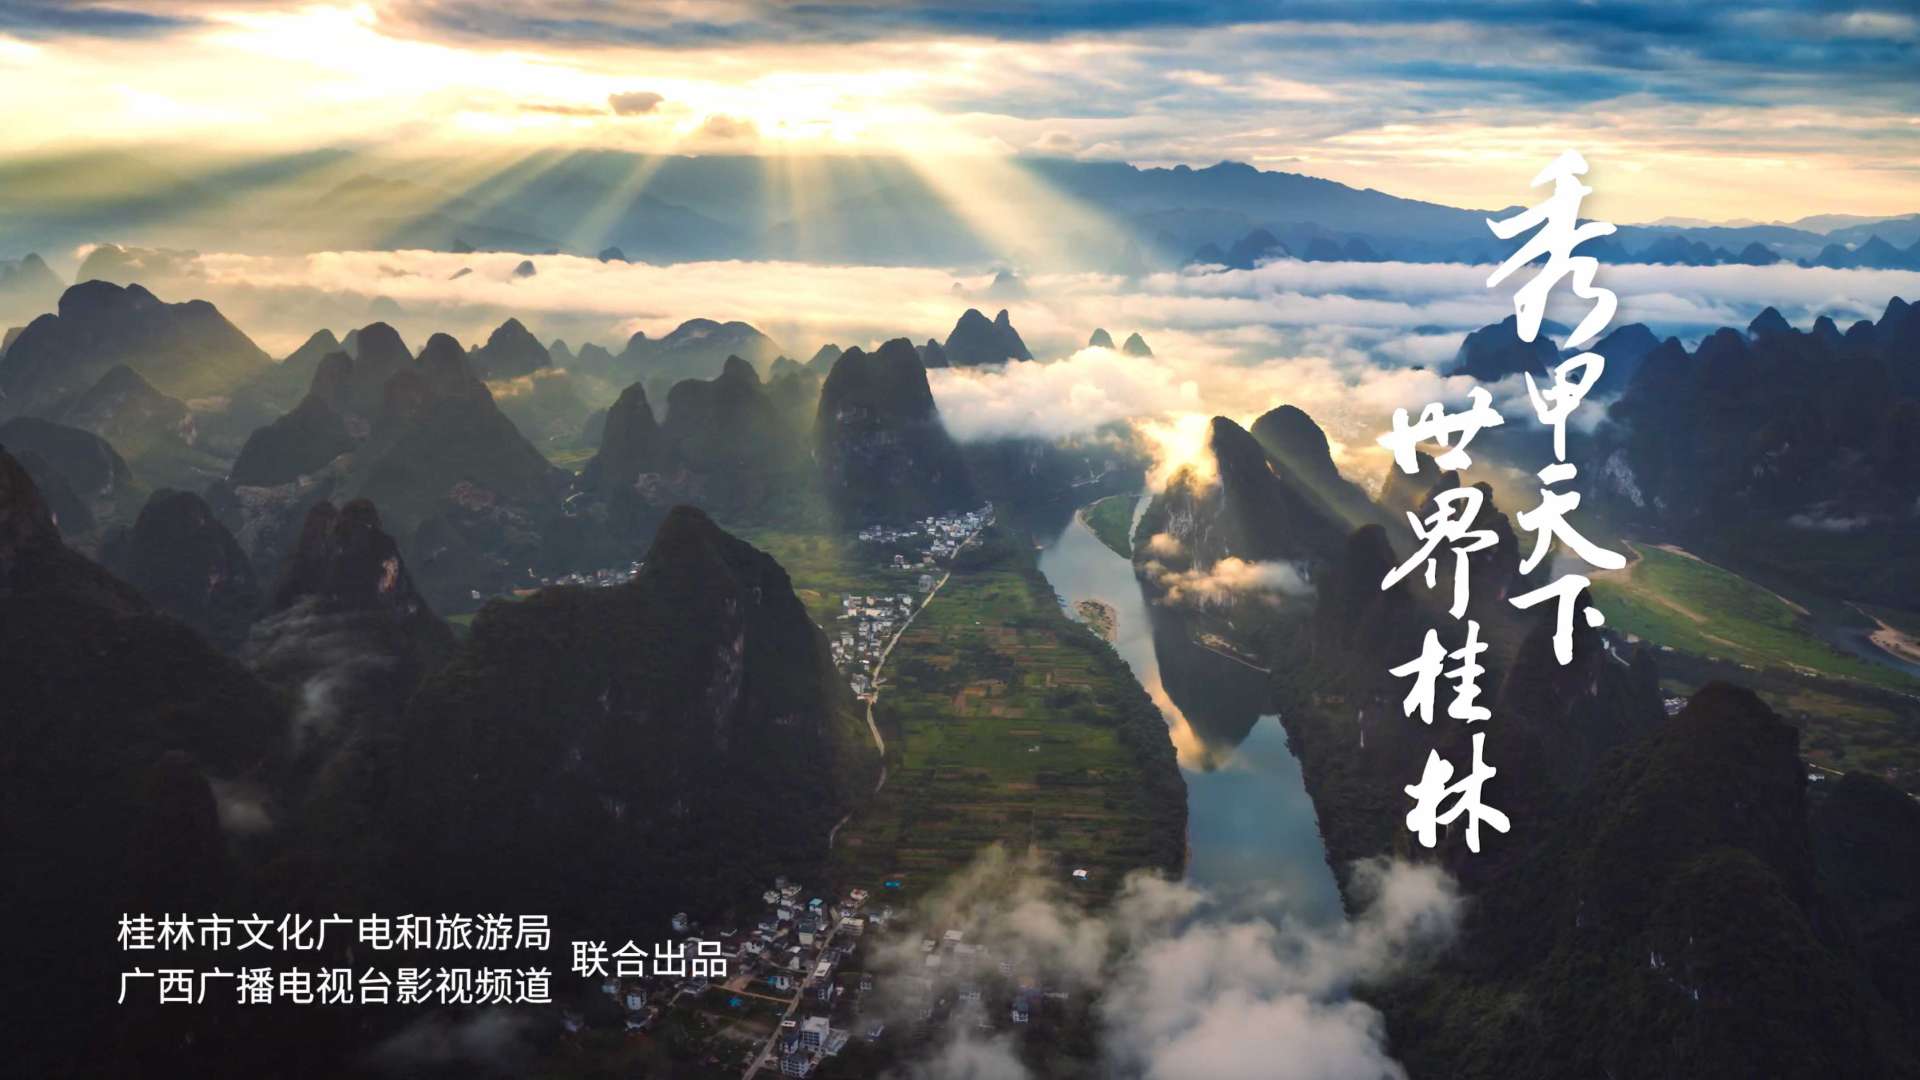 《秀甲天下 世界桂林》宣传片重磅发布